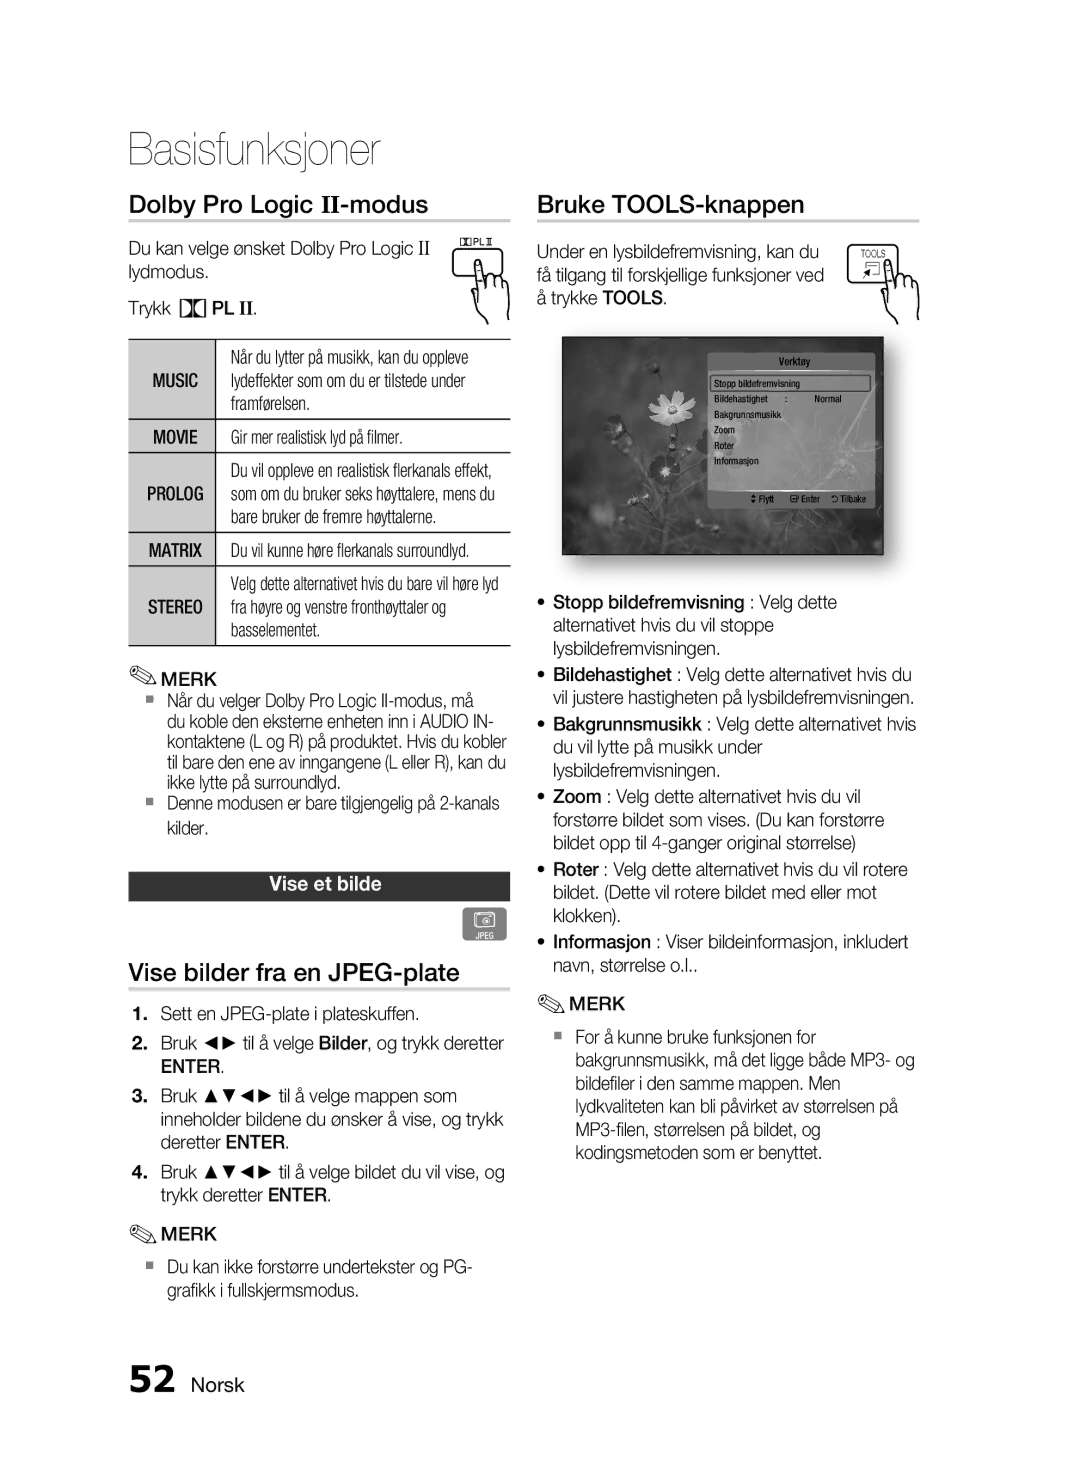 Samsung HT-C5500/XEE Dolby Pro Logic II-modus, Vise bilder fra en JPEG-plate, Bruke TOOLS-knappen, Vise et bilde, Music 